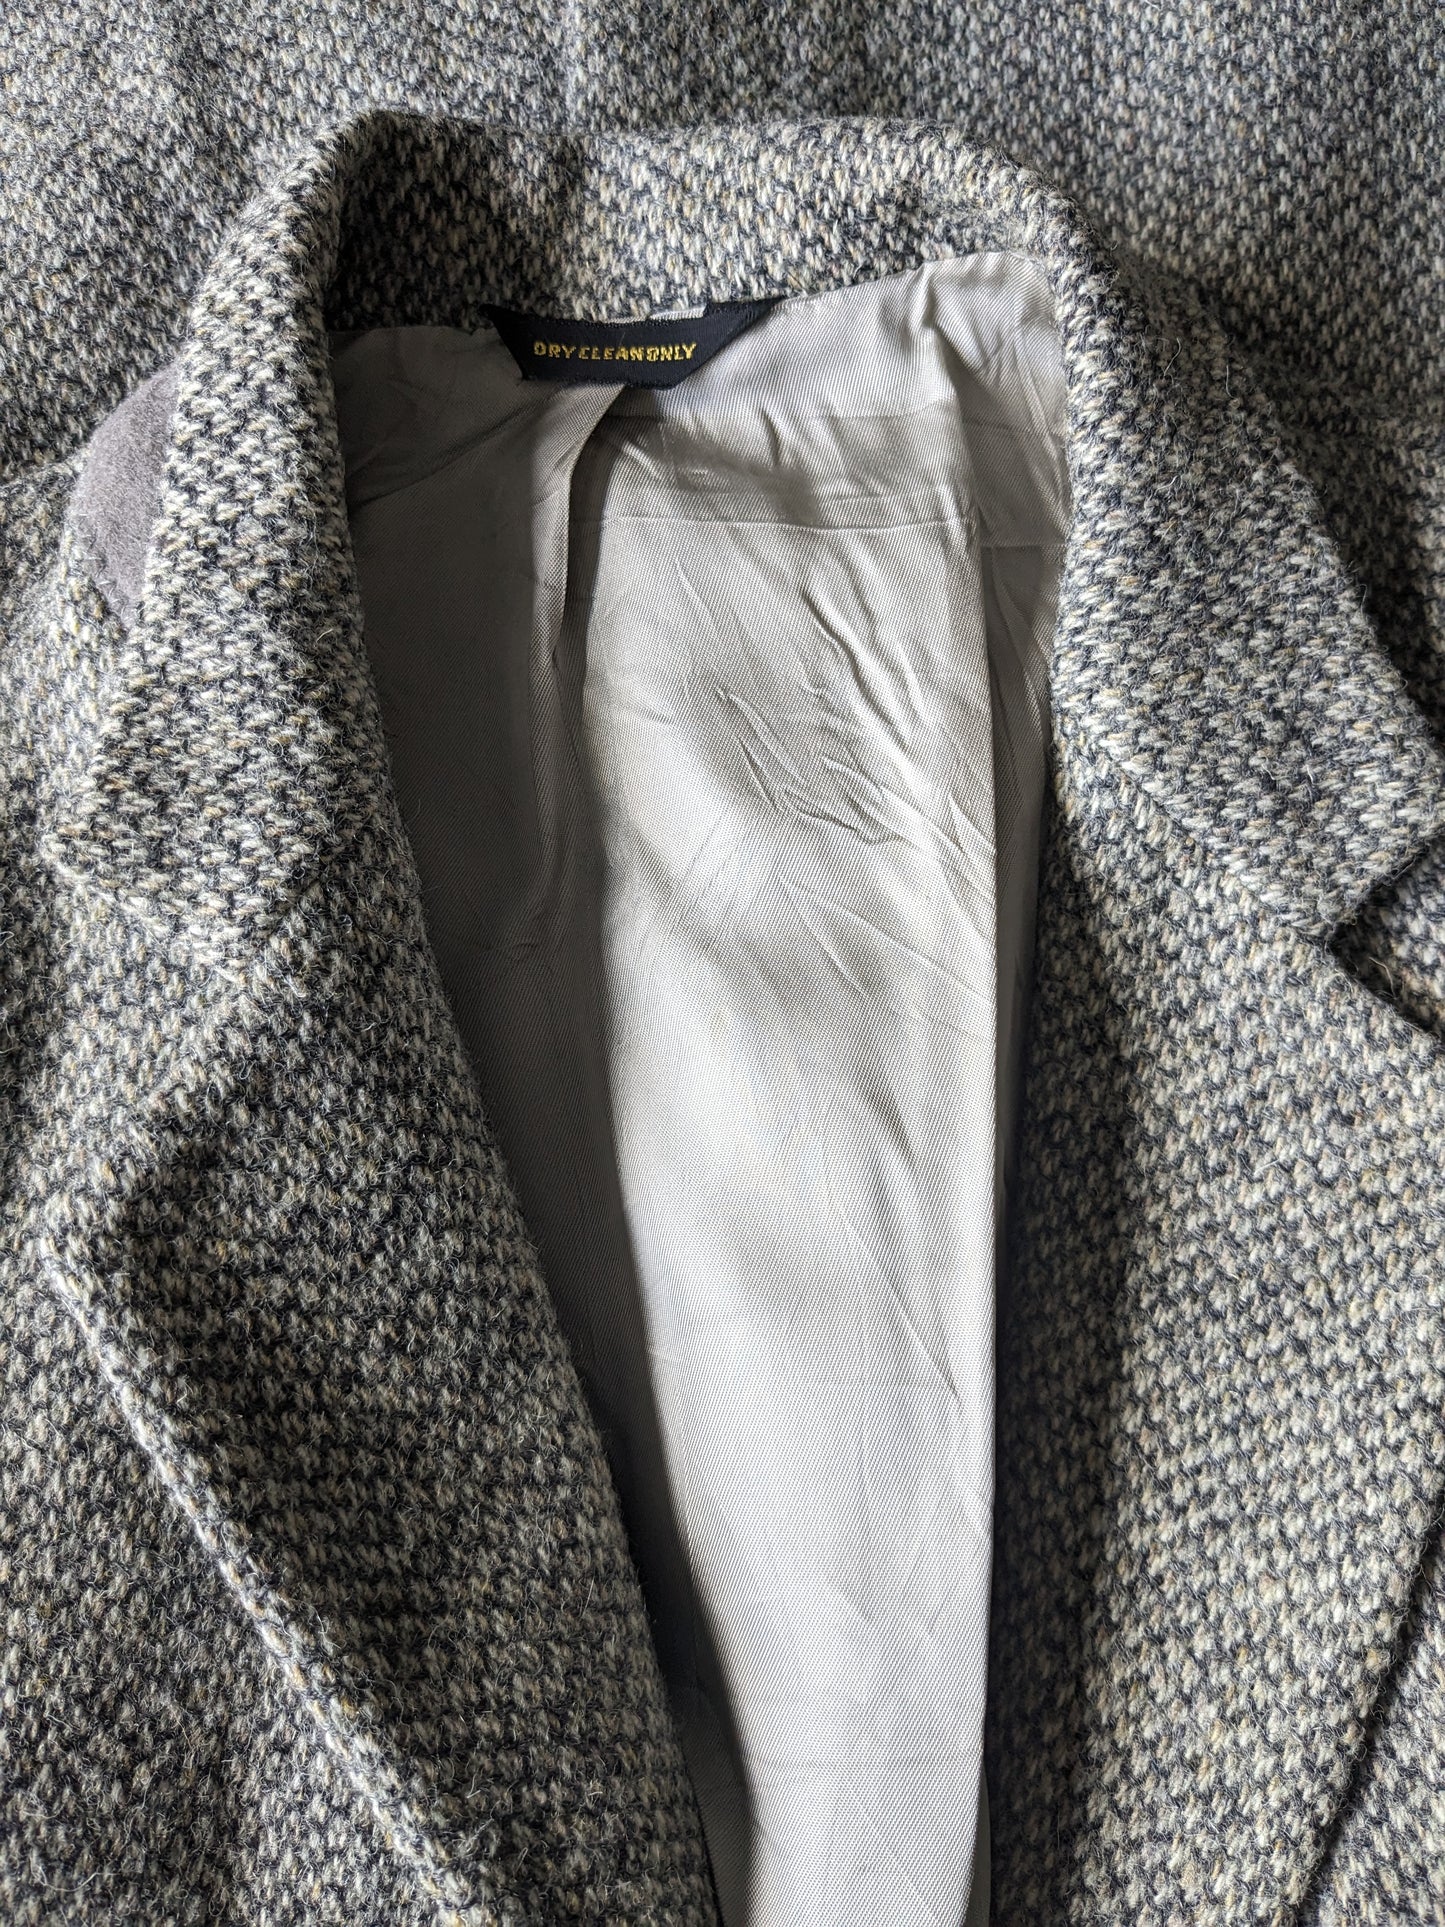 Manteau Vintage queue Harris Tweed Colbert. Motif gris beige. Taille 25 (50.m).